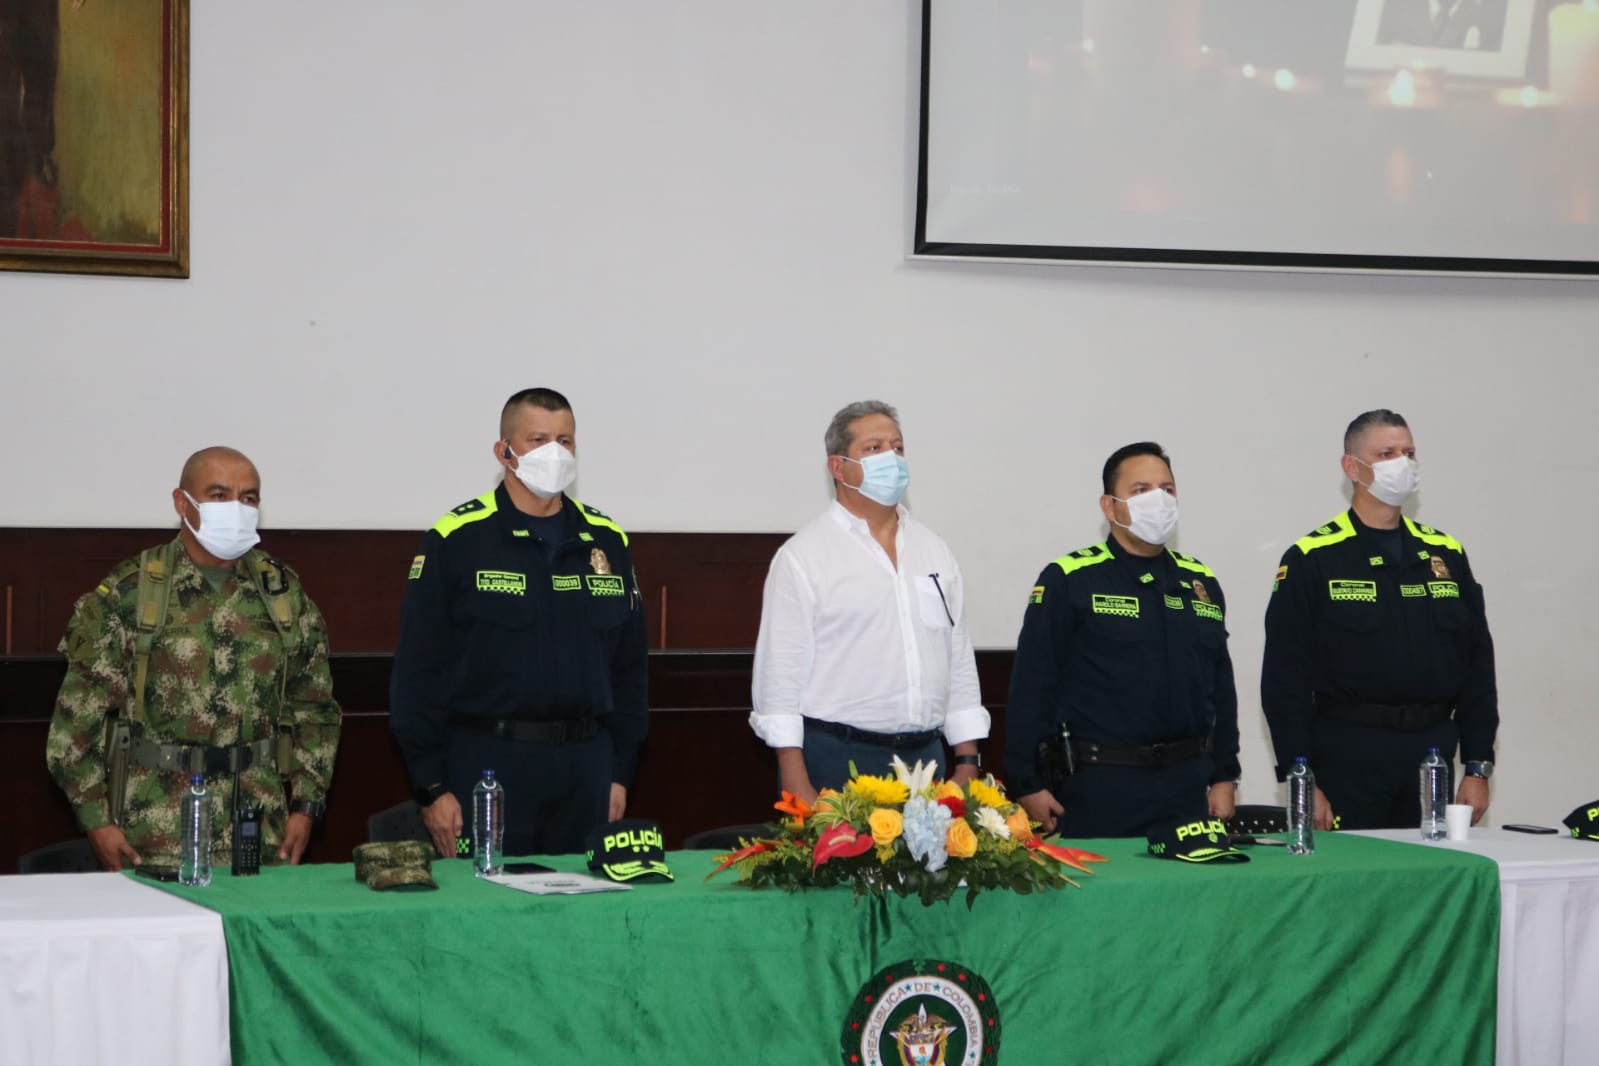 Gobernador hizo entrega de la bandera del departamento a nuevo comandante de la Policía Huila